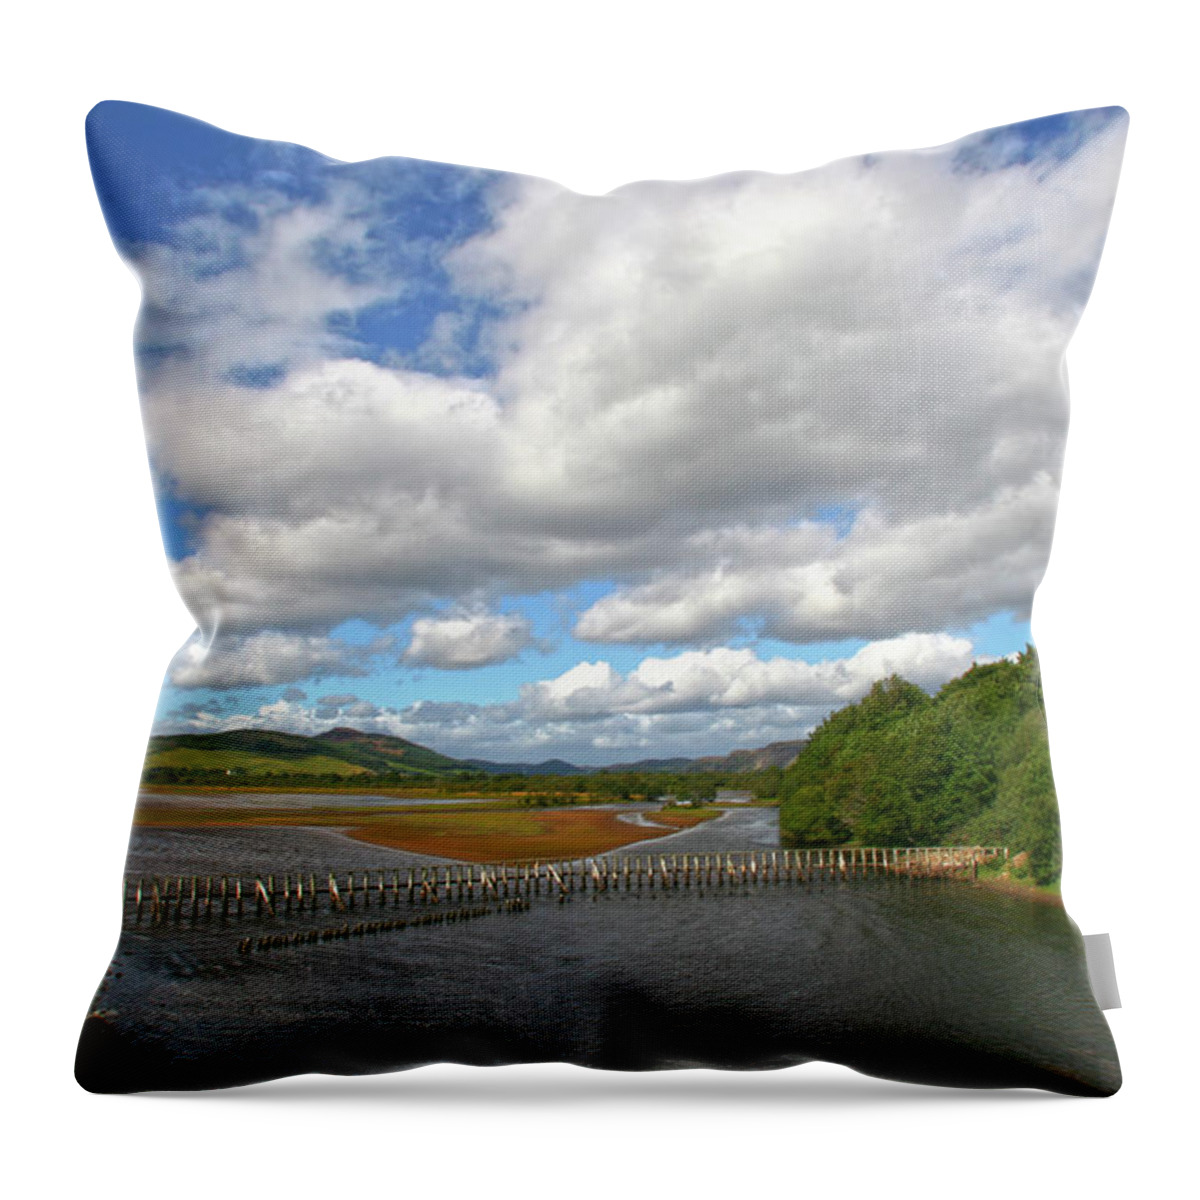 Scotland Throw Pillow featuring the photograph Highland Brora by Robert Och